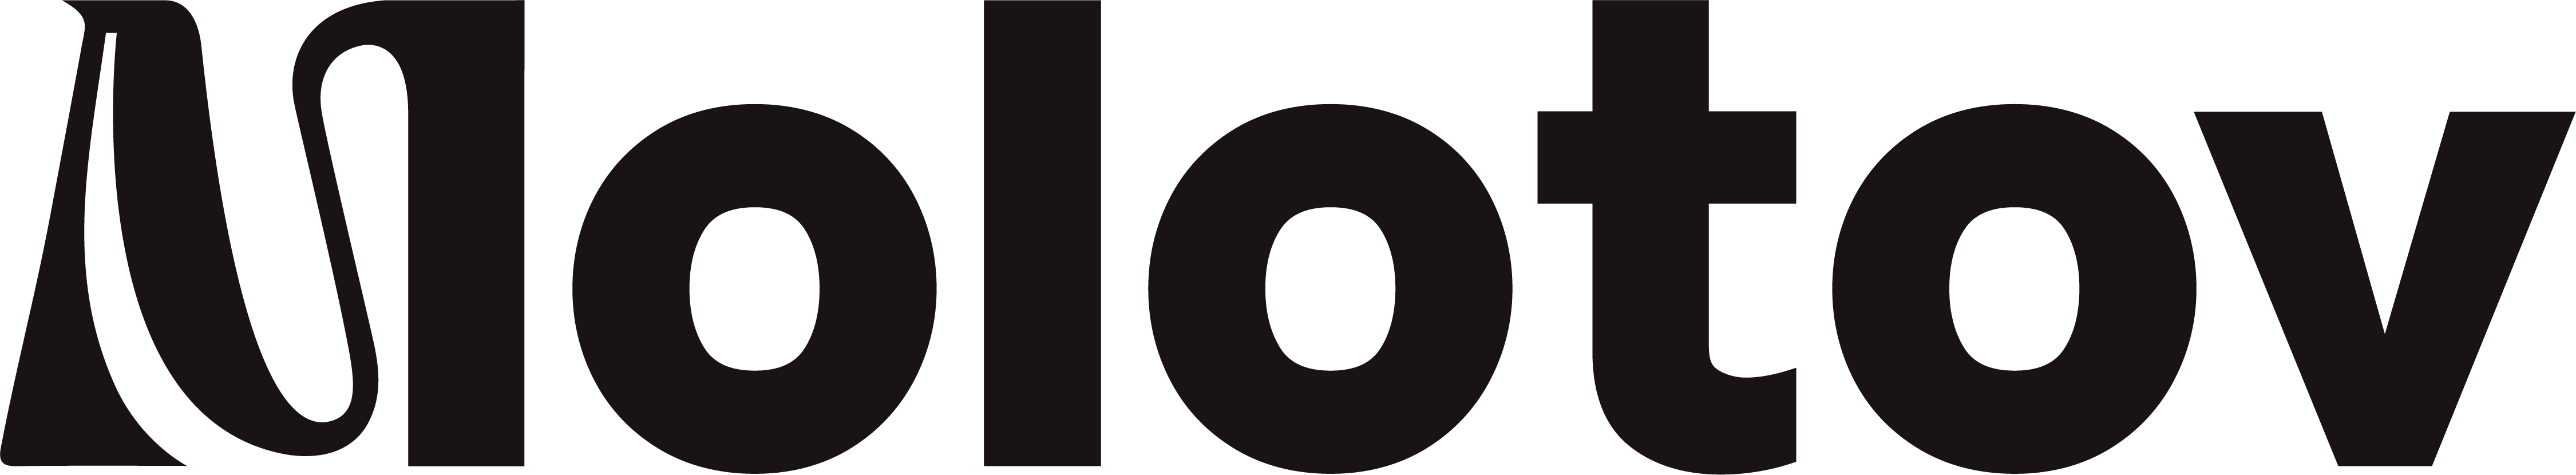 logo-molotov